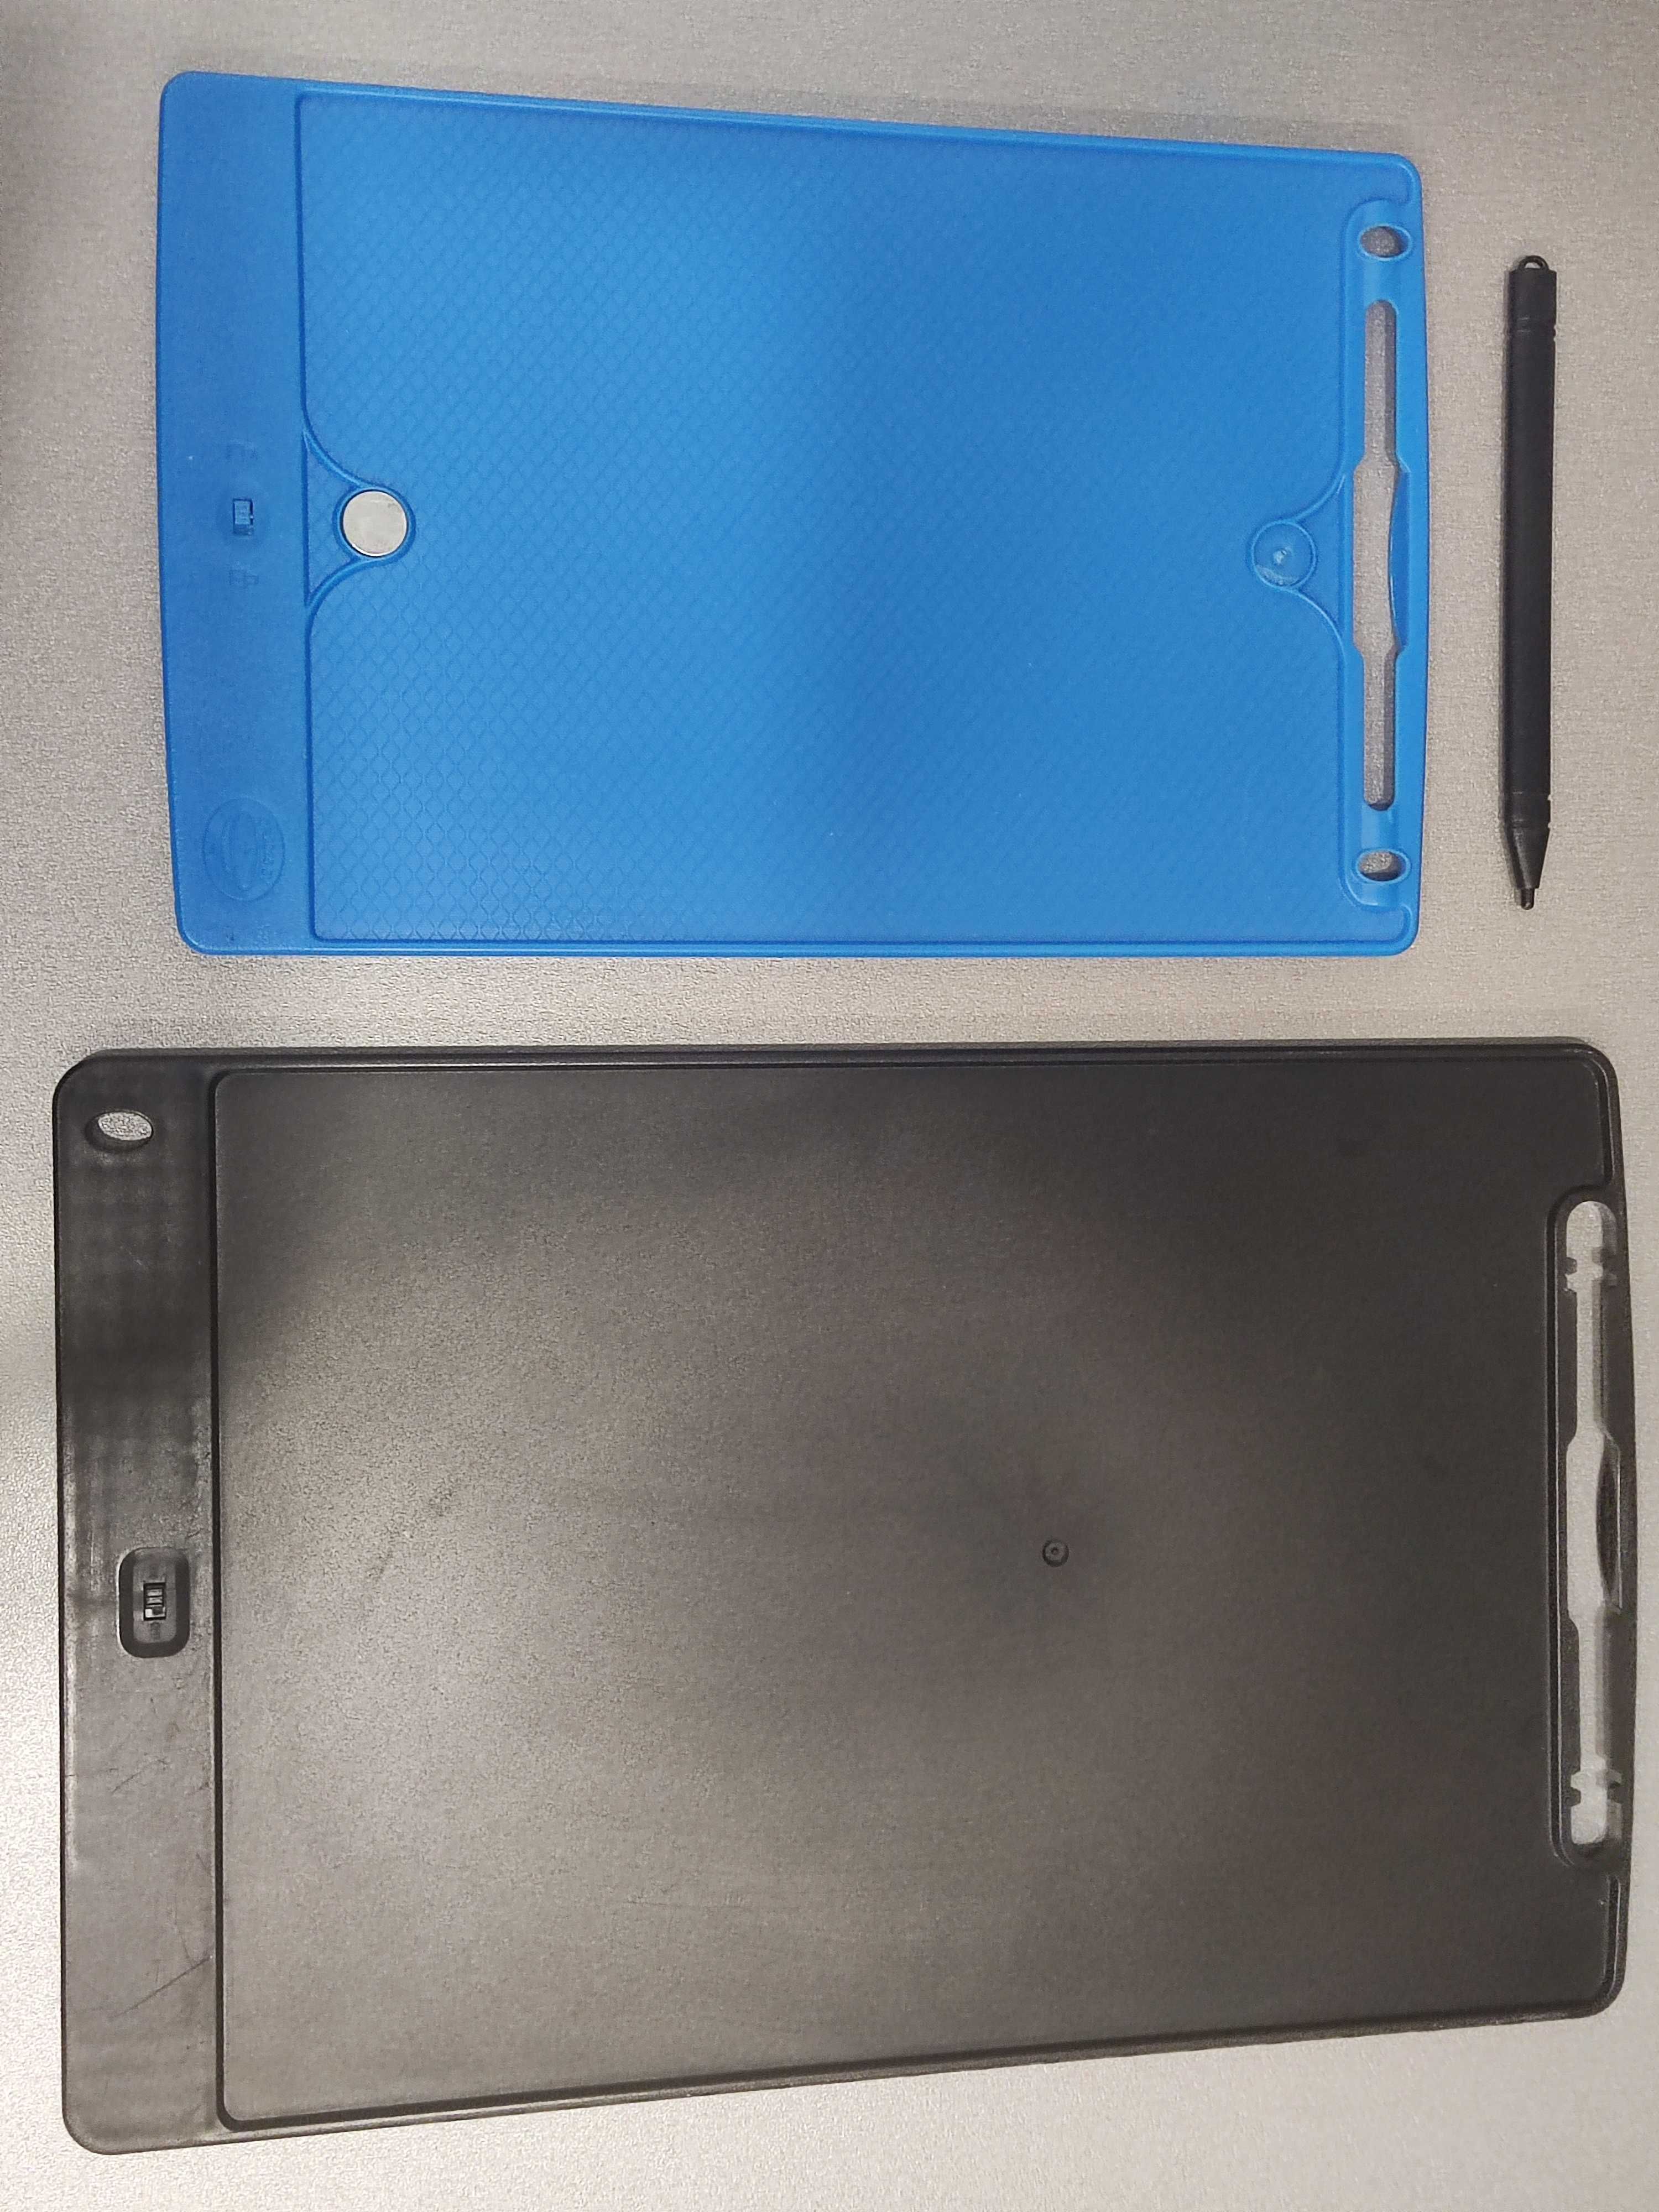 LCD доска/планшет для рисования - 2 штуки 8,5" и 11.5"